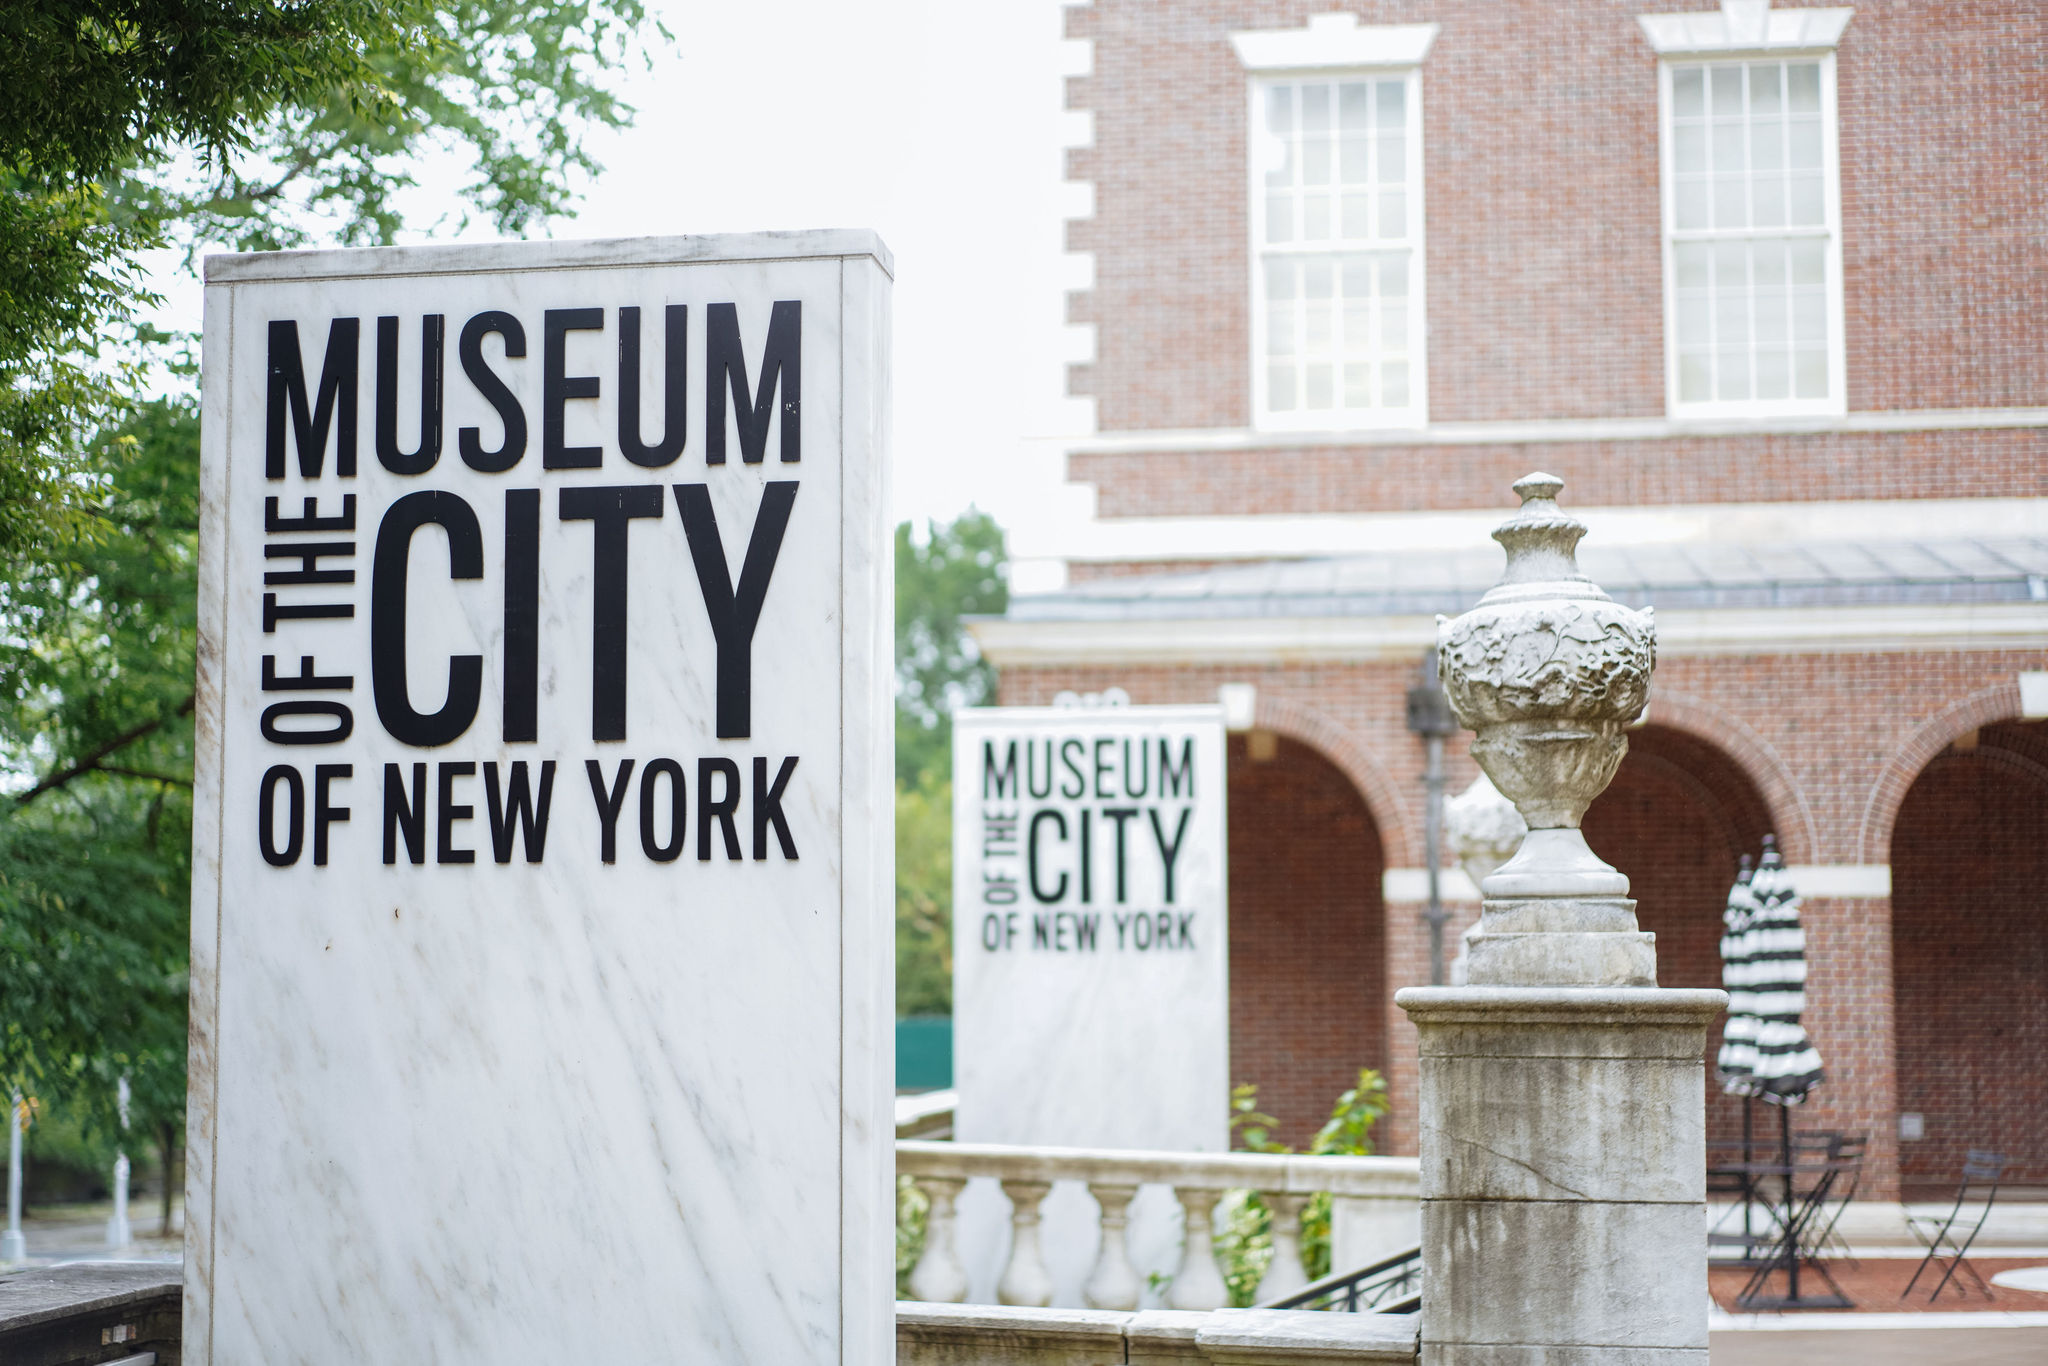 북쪽 모퉁이를 향한 테라스에서 찍은 박물관 전면의 모습입니다. 전경에는 뉴욕시 박물관 로고가 있는 대리석 간판이 있습니다.